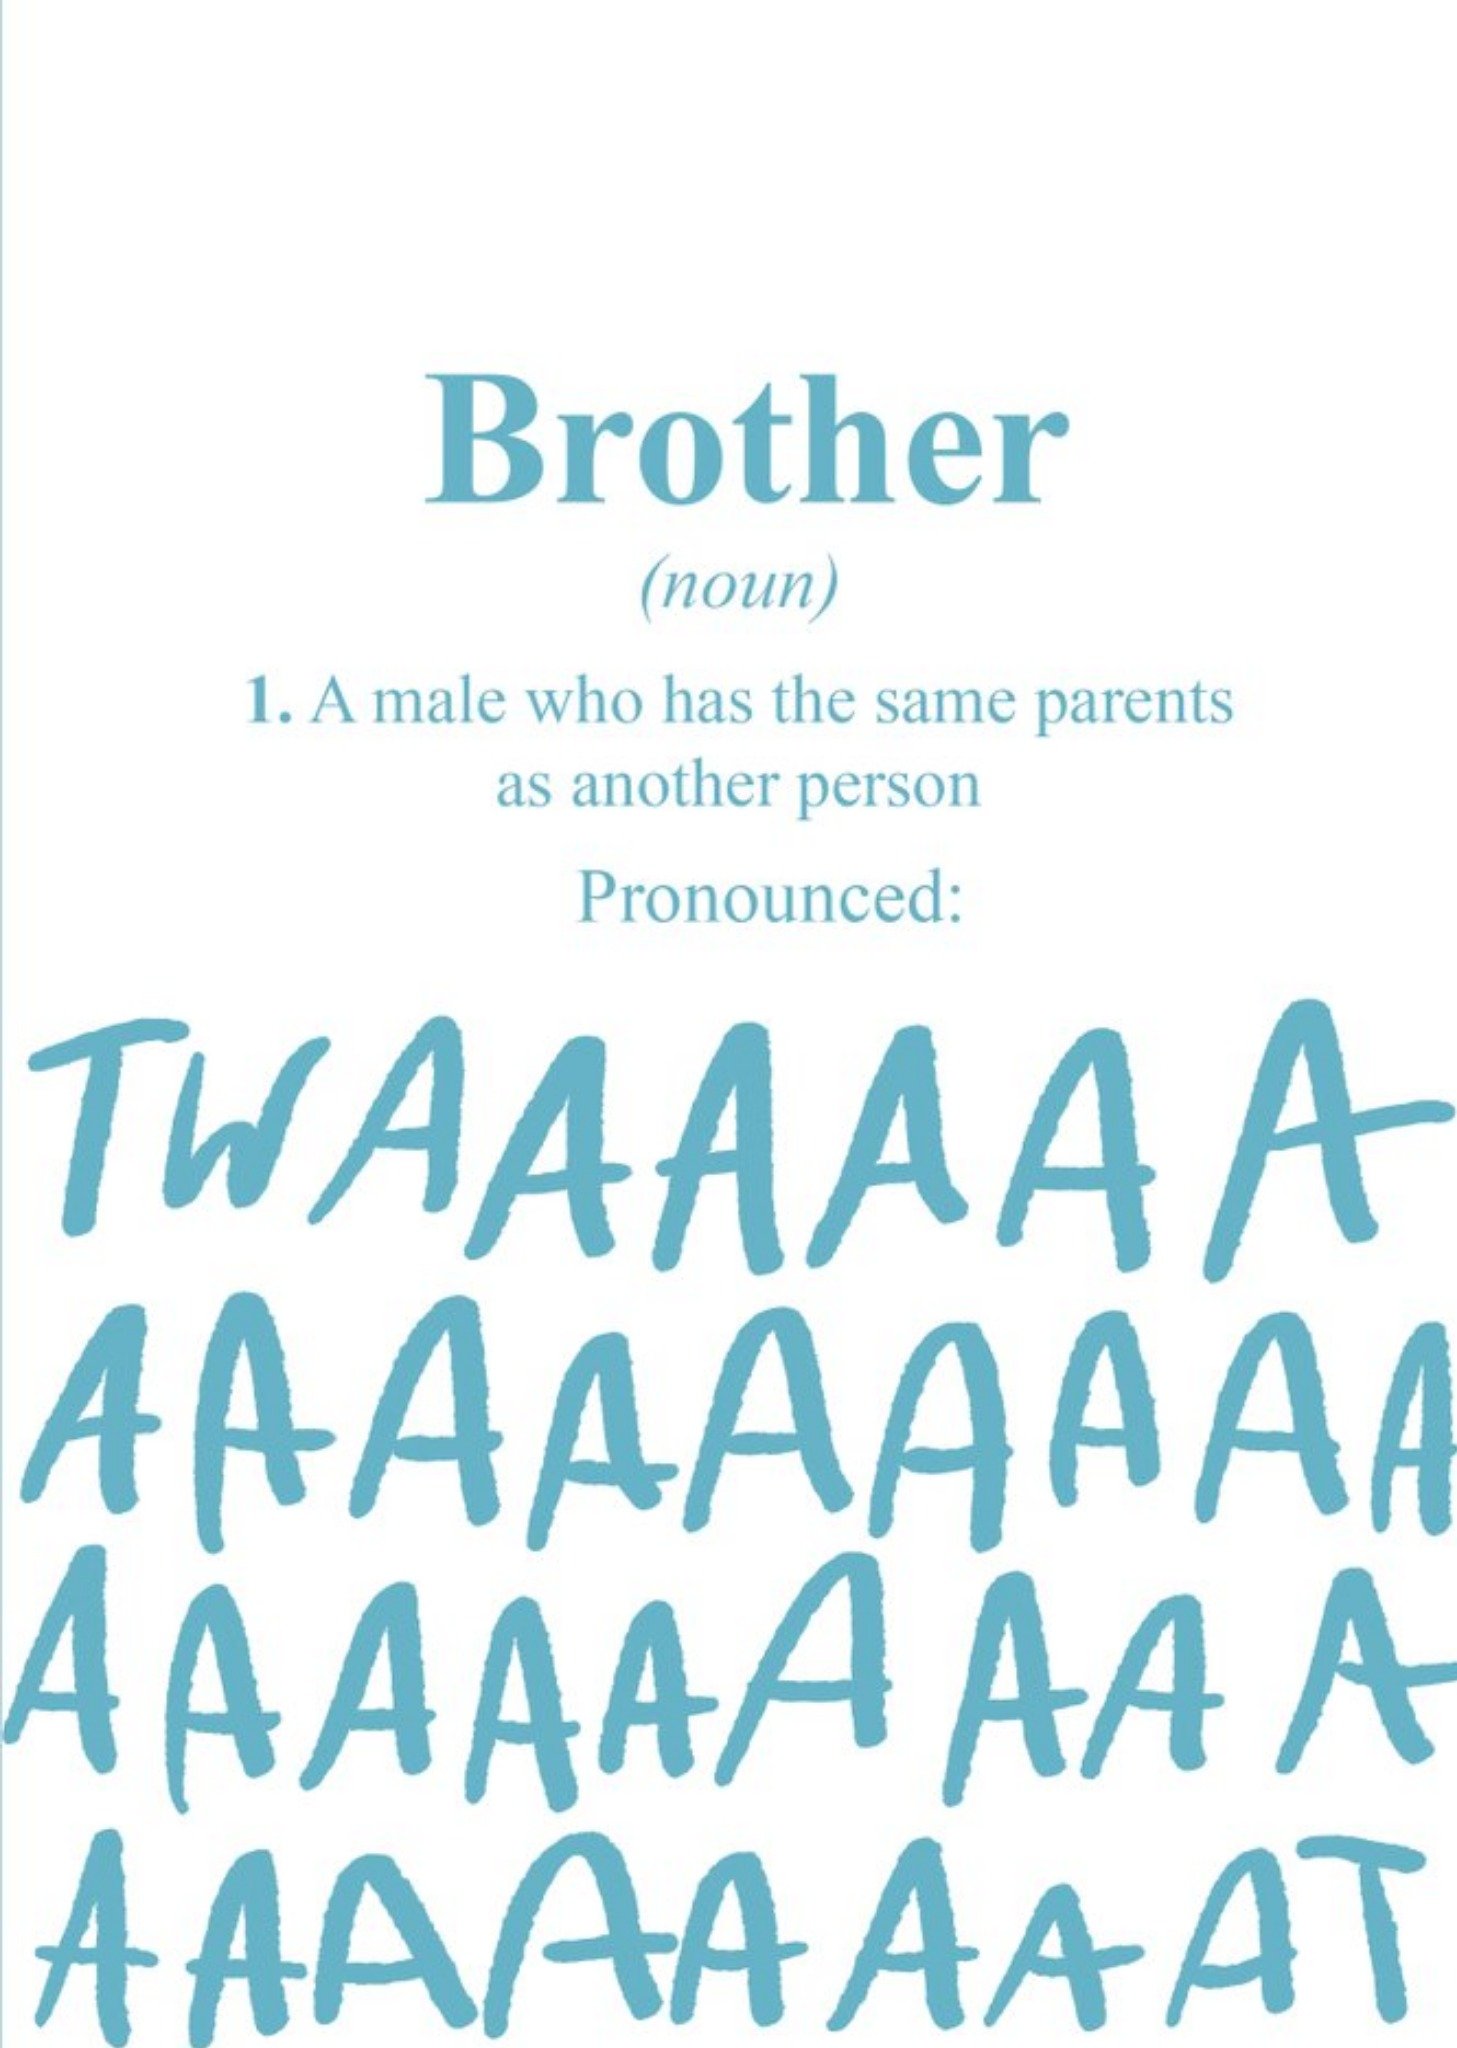 Moonpig Funny Birthday Card - Brother - Pronounced: Twaaaaaat, Large